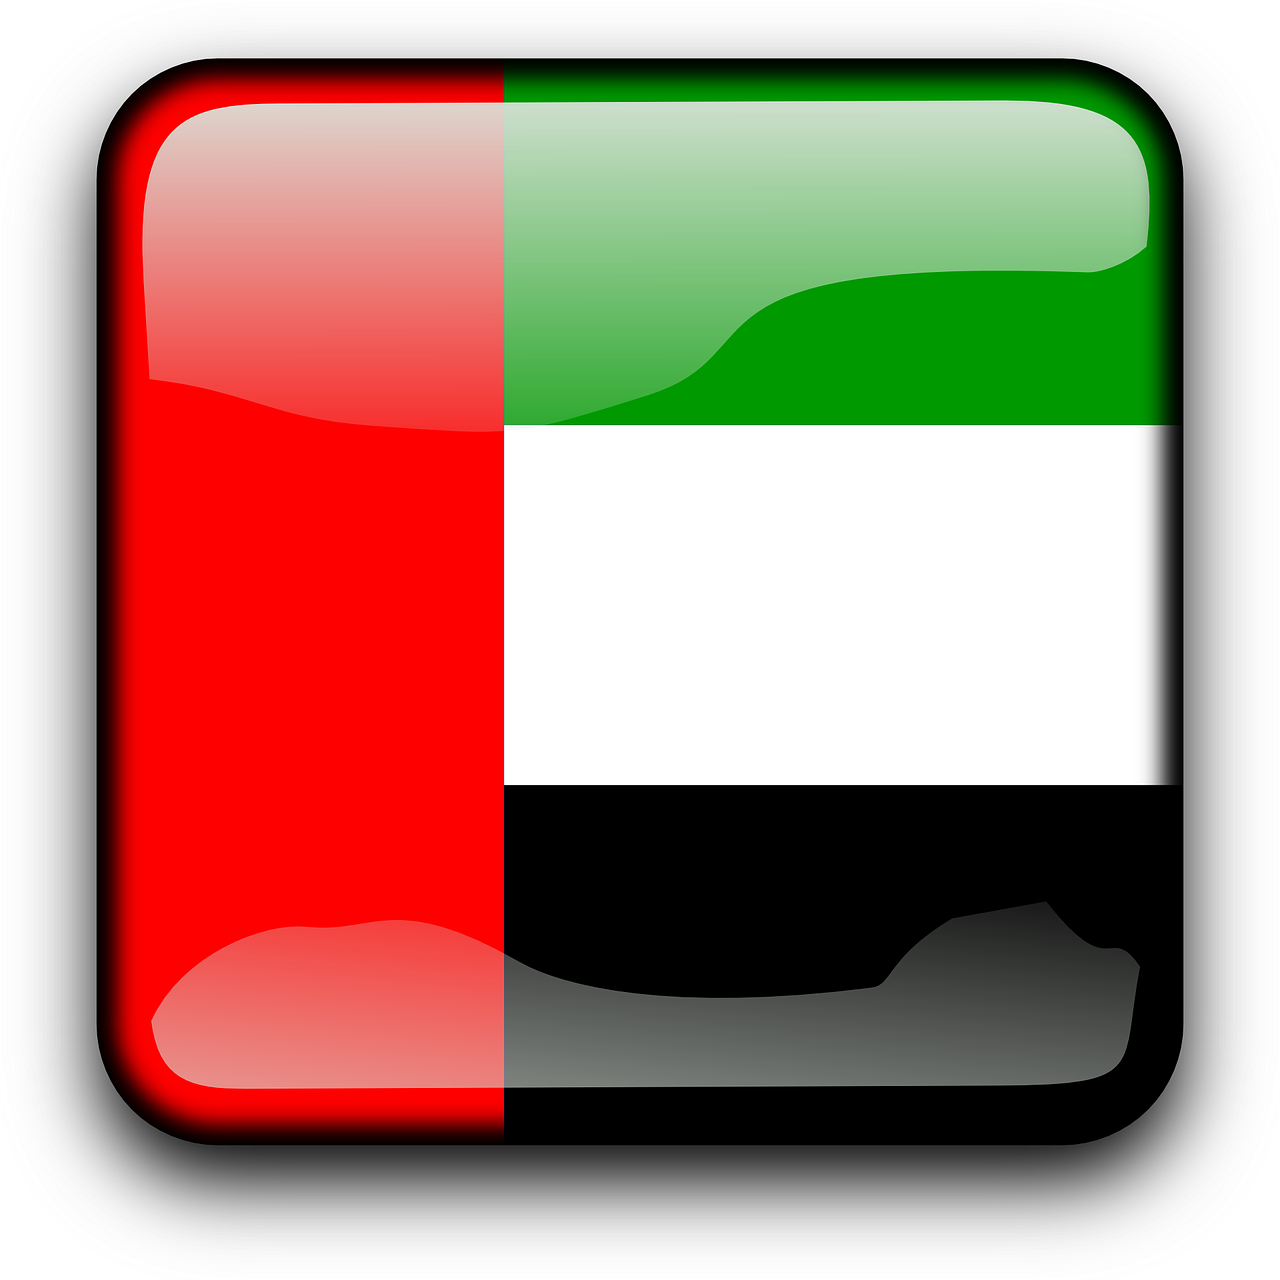 United Arab Emirates - Flag Of The United Arab Emirates (1280x1280)